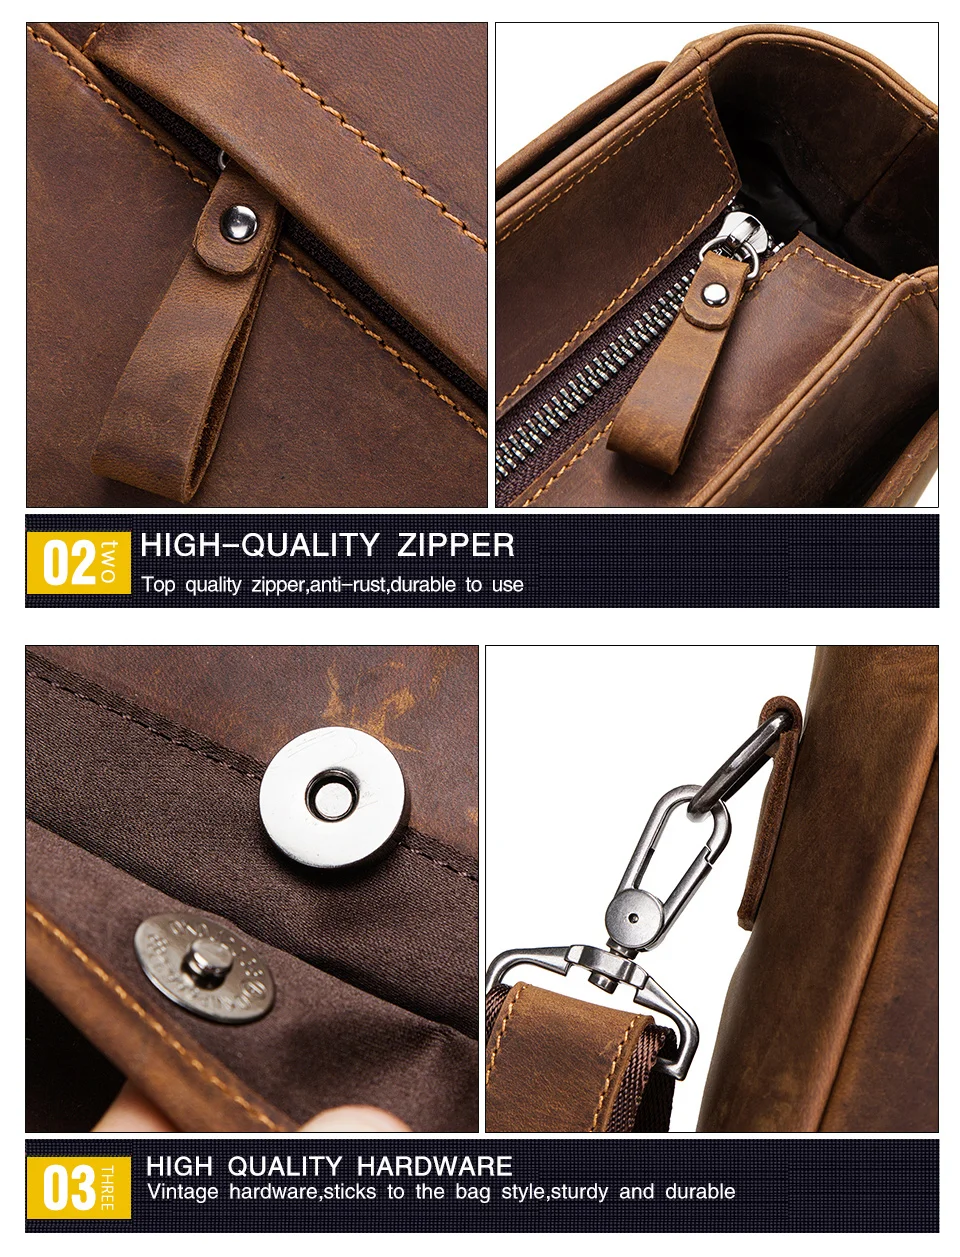 CONTACT'S Кожаная высококачественная повседневная вместительная сумка года в винтажном стиле, может использоваться как дорожная сумка